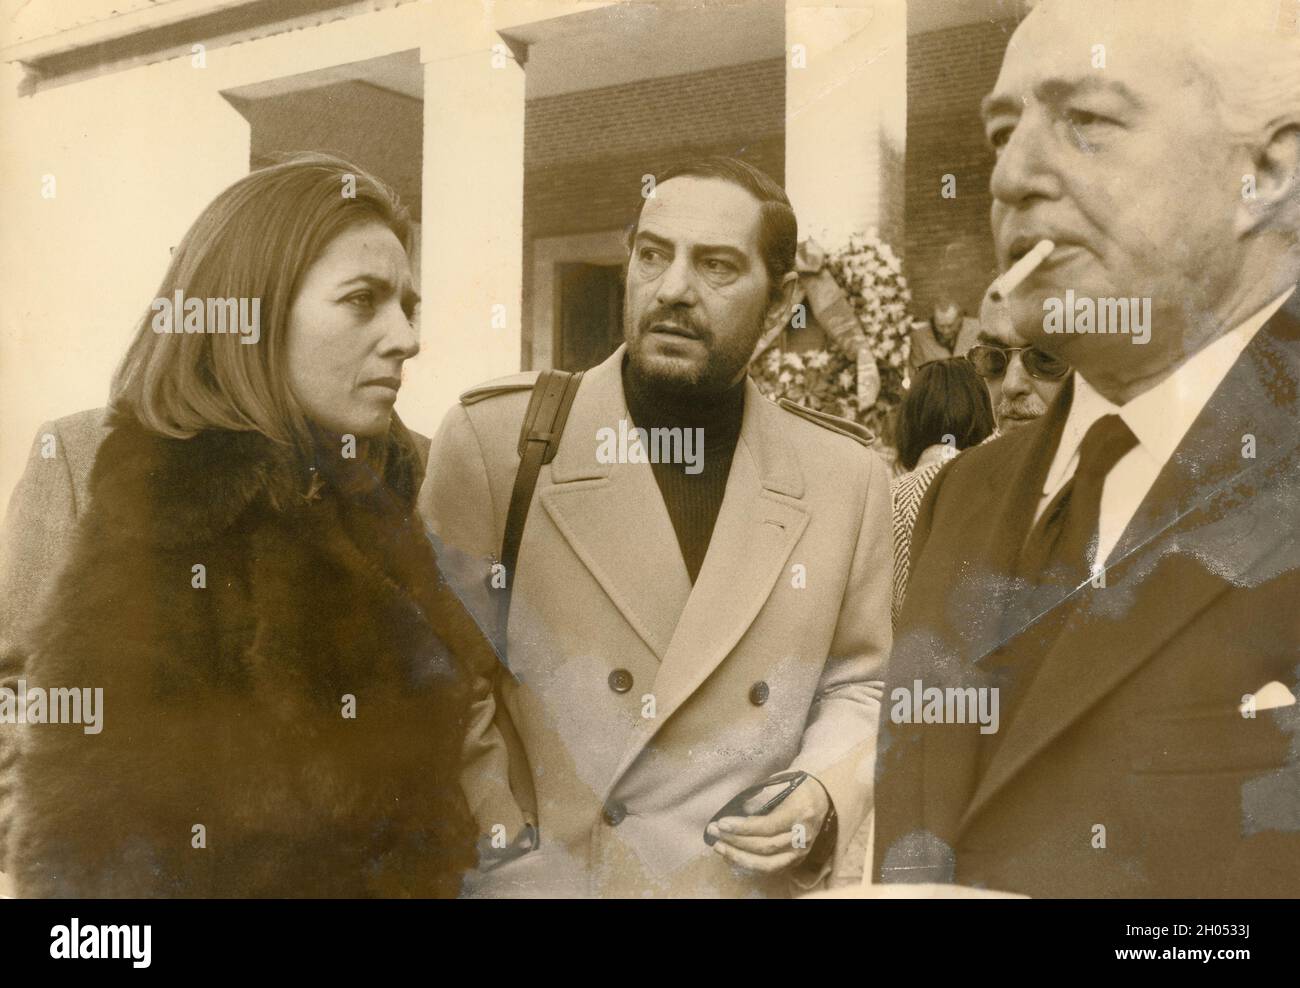 Acteurs et réalisateurs italiens Vittorio de Sica (à droite) et Nino Manfredi et épouse, années 1970 Banque D'Images